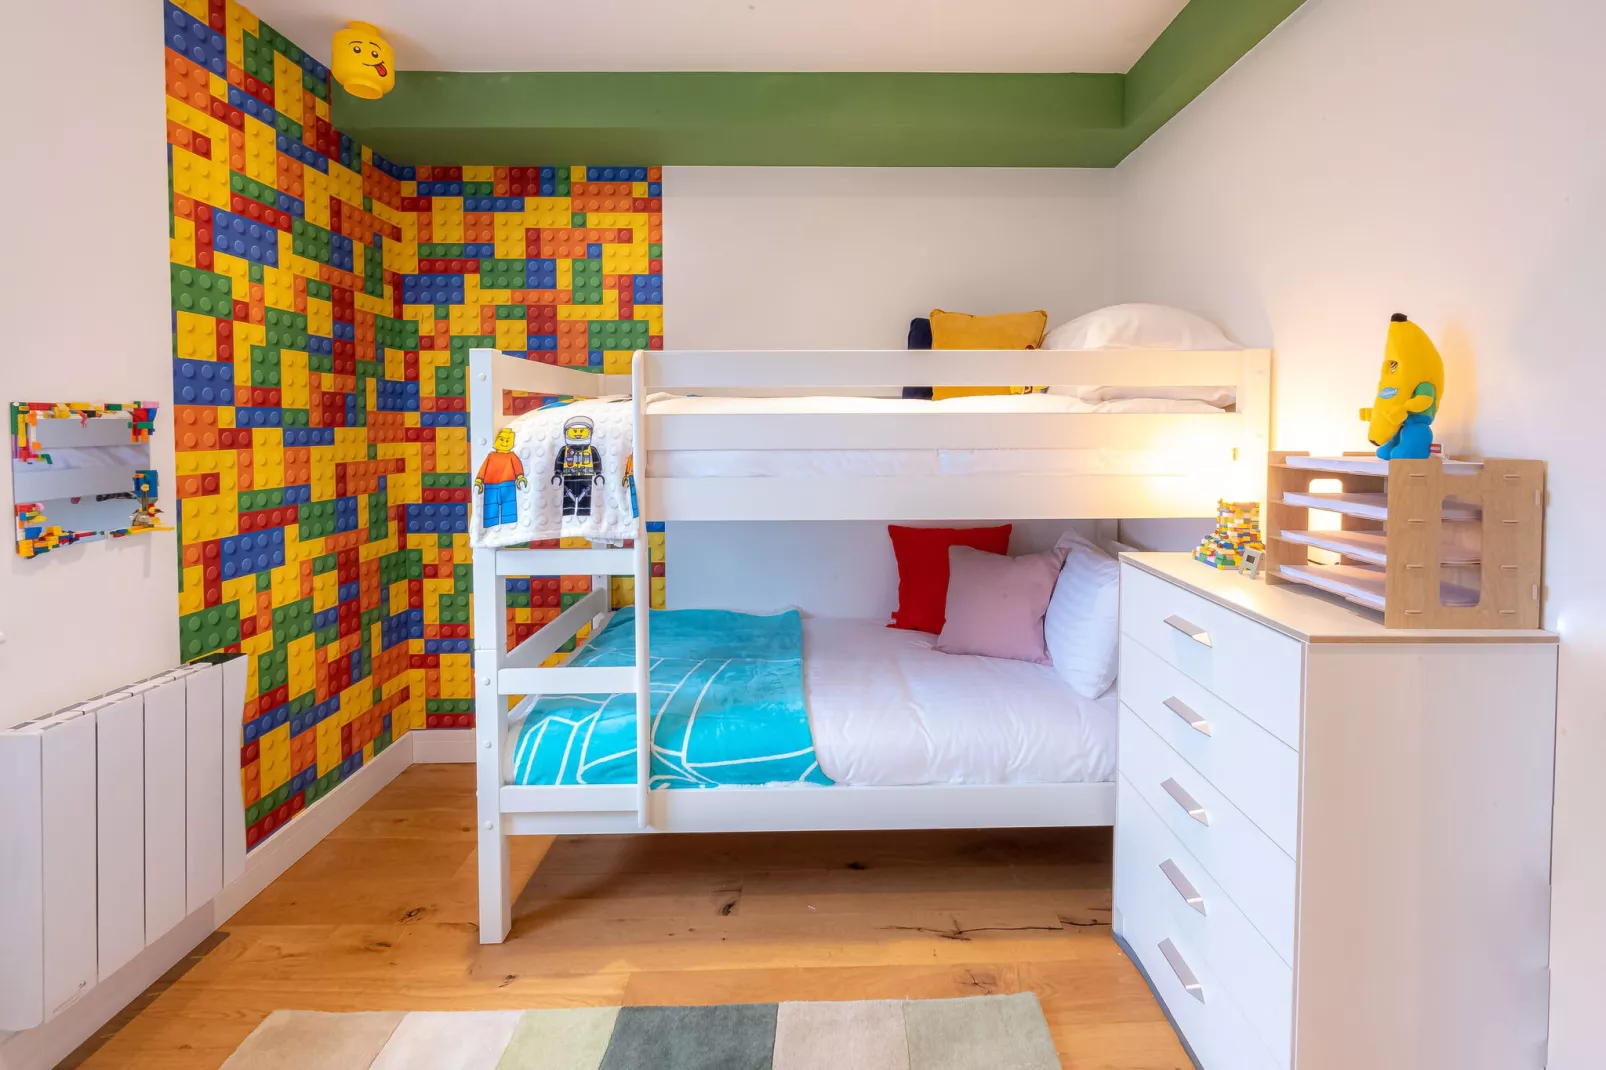 2 Bedroom Apartment 2 Bathroom Legoland